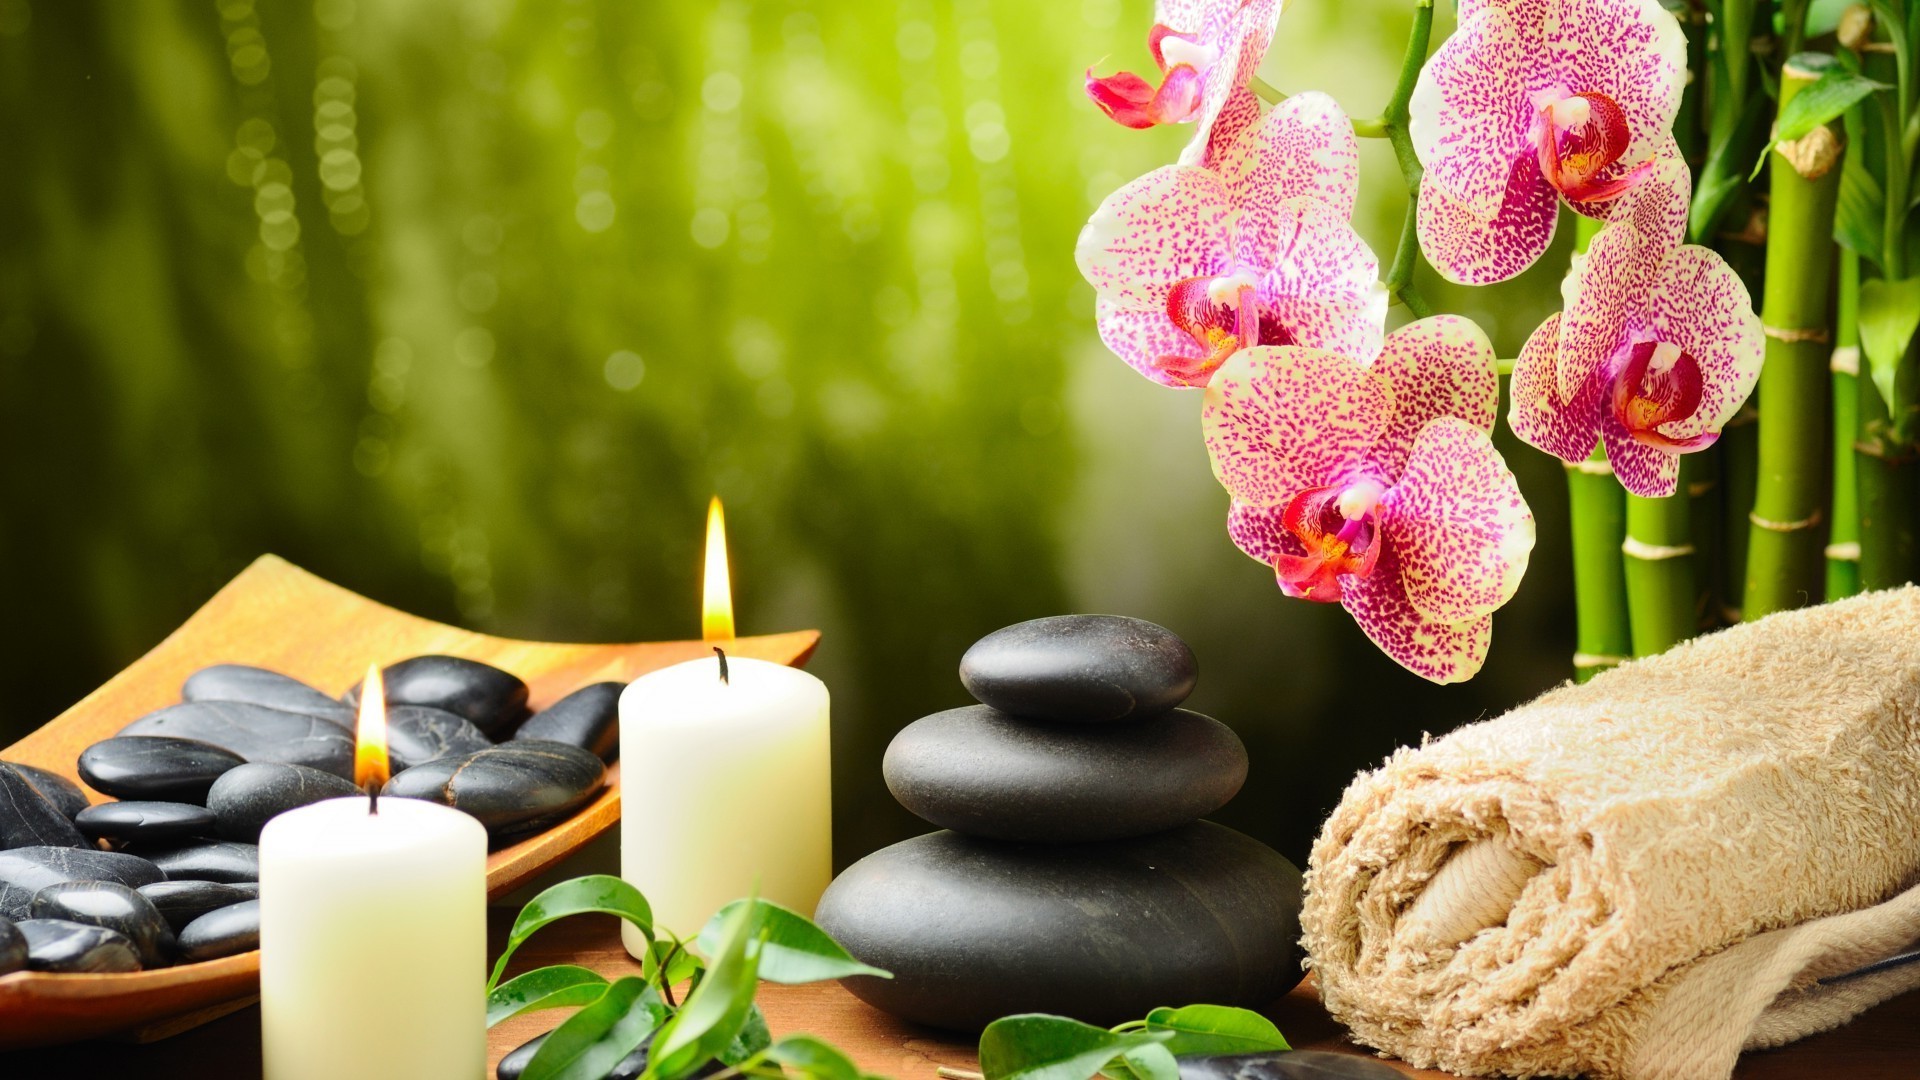 предметы интерьера свеча дзен цветок ароматерапия природа релаксация медитация бамбук лечение гармония лист массаж терапия украшения красивые